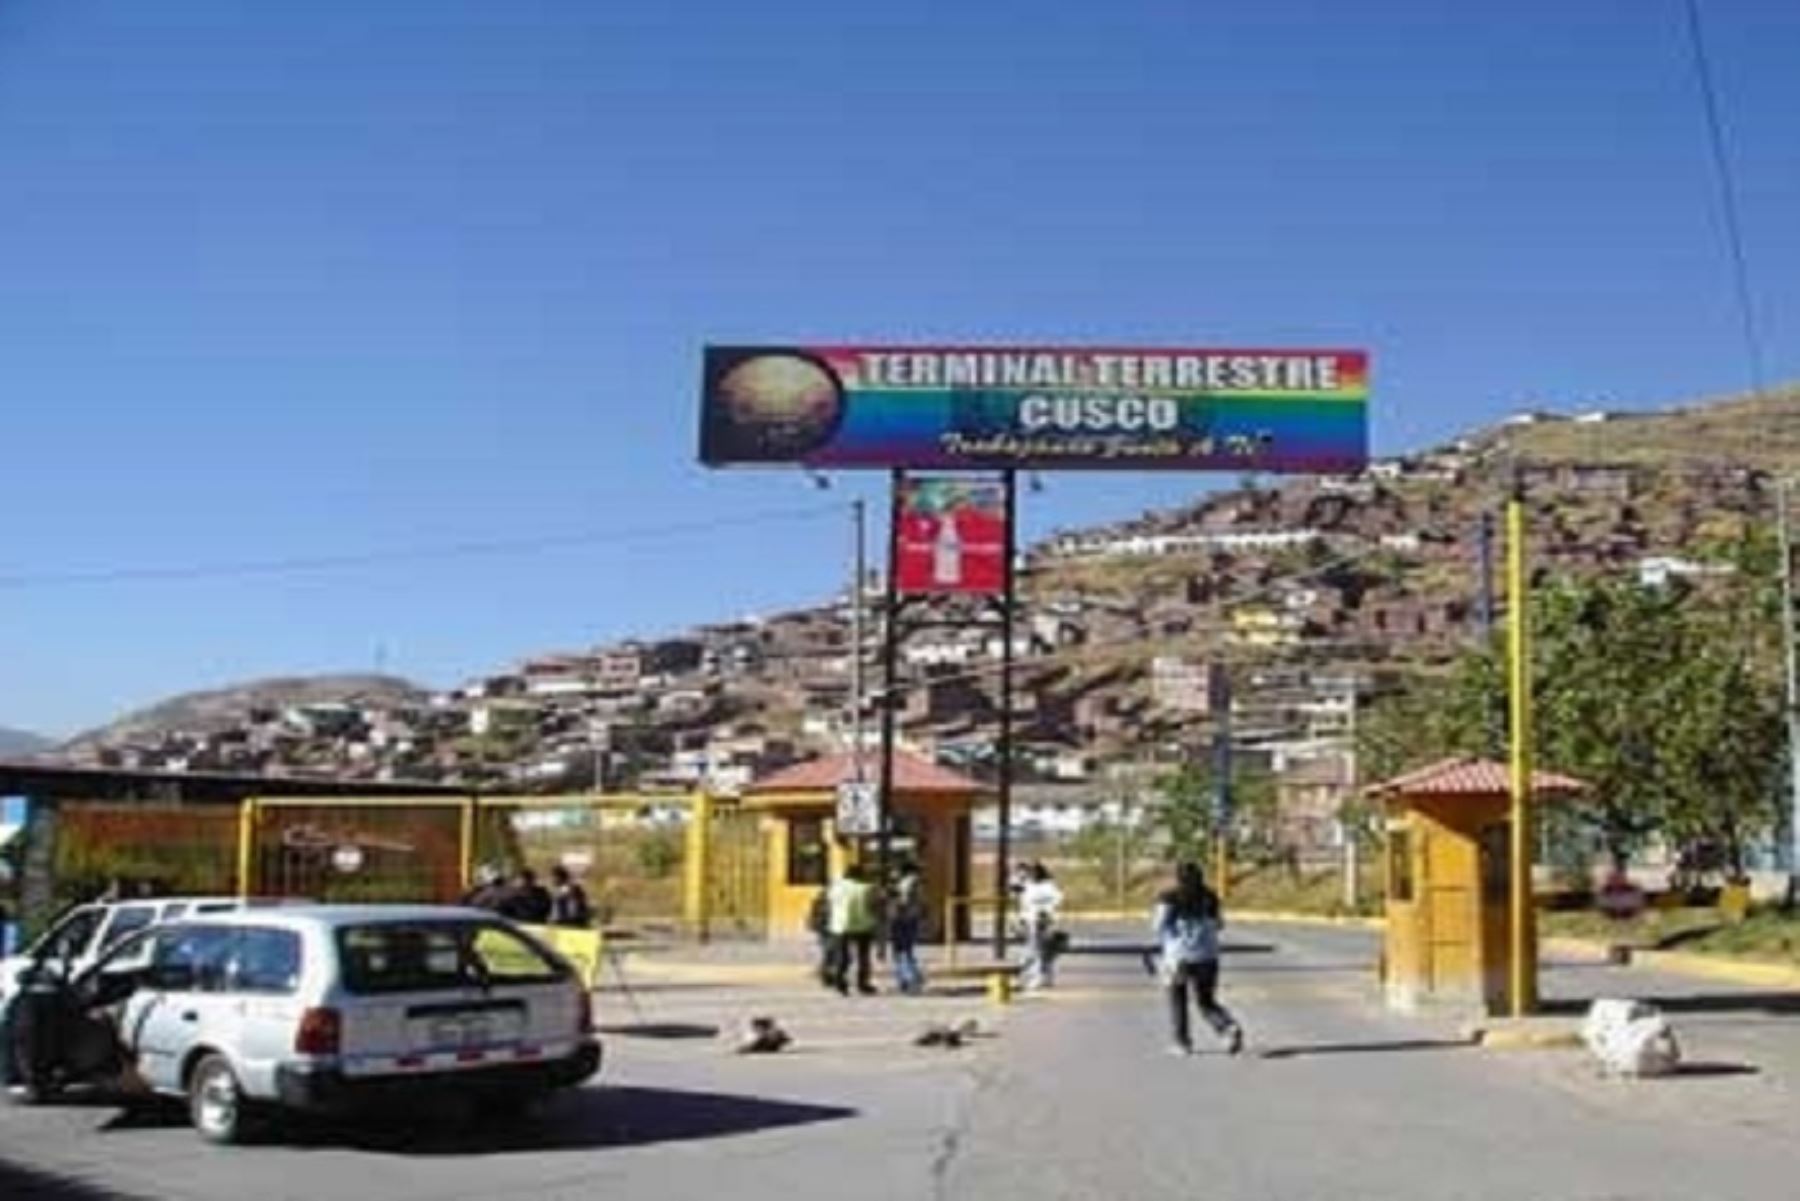 La Dirección Regional de Transportes y Comunicaciones del Cusco, en coordinación con la Policía Nacional del Perú, la Fiscalía y demás organismos competentes, procederá a clausurar, prohibir o suspender los terminales de transportes interprovinciales que se consideren informales